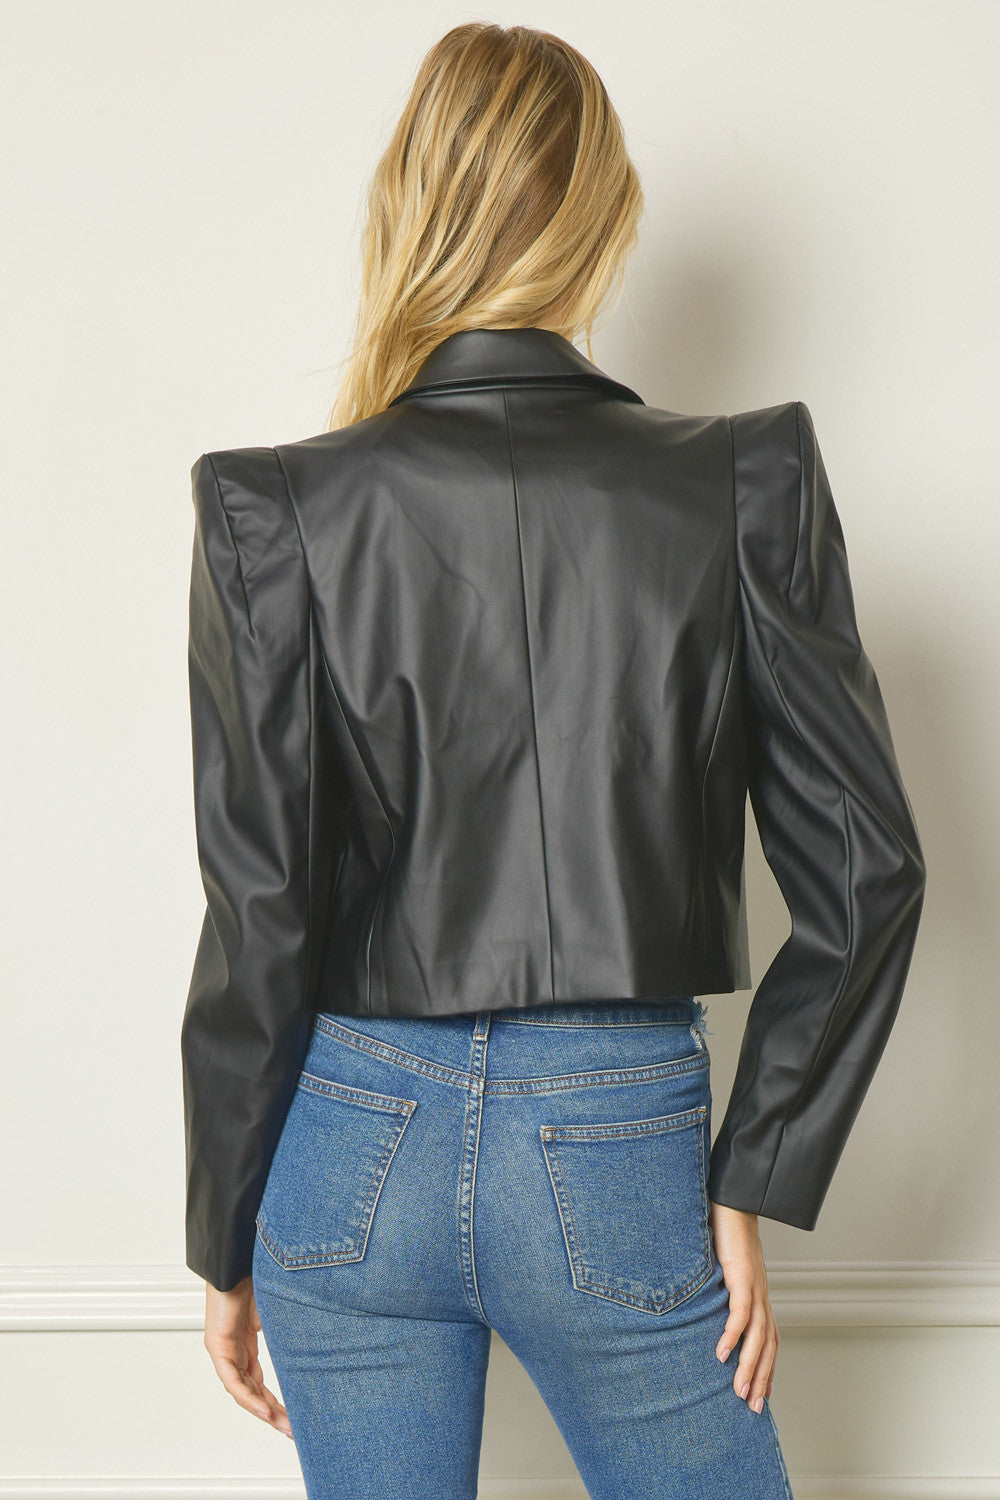 Jessie Cropped Faux Leather Jacket FINAL SALE